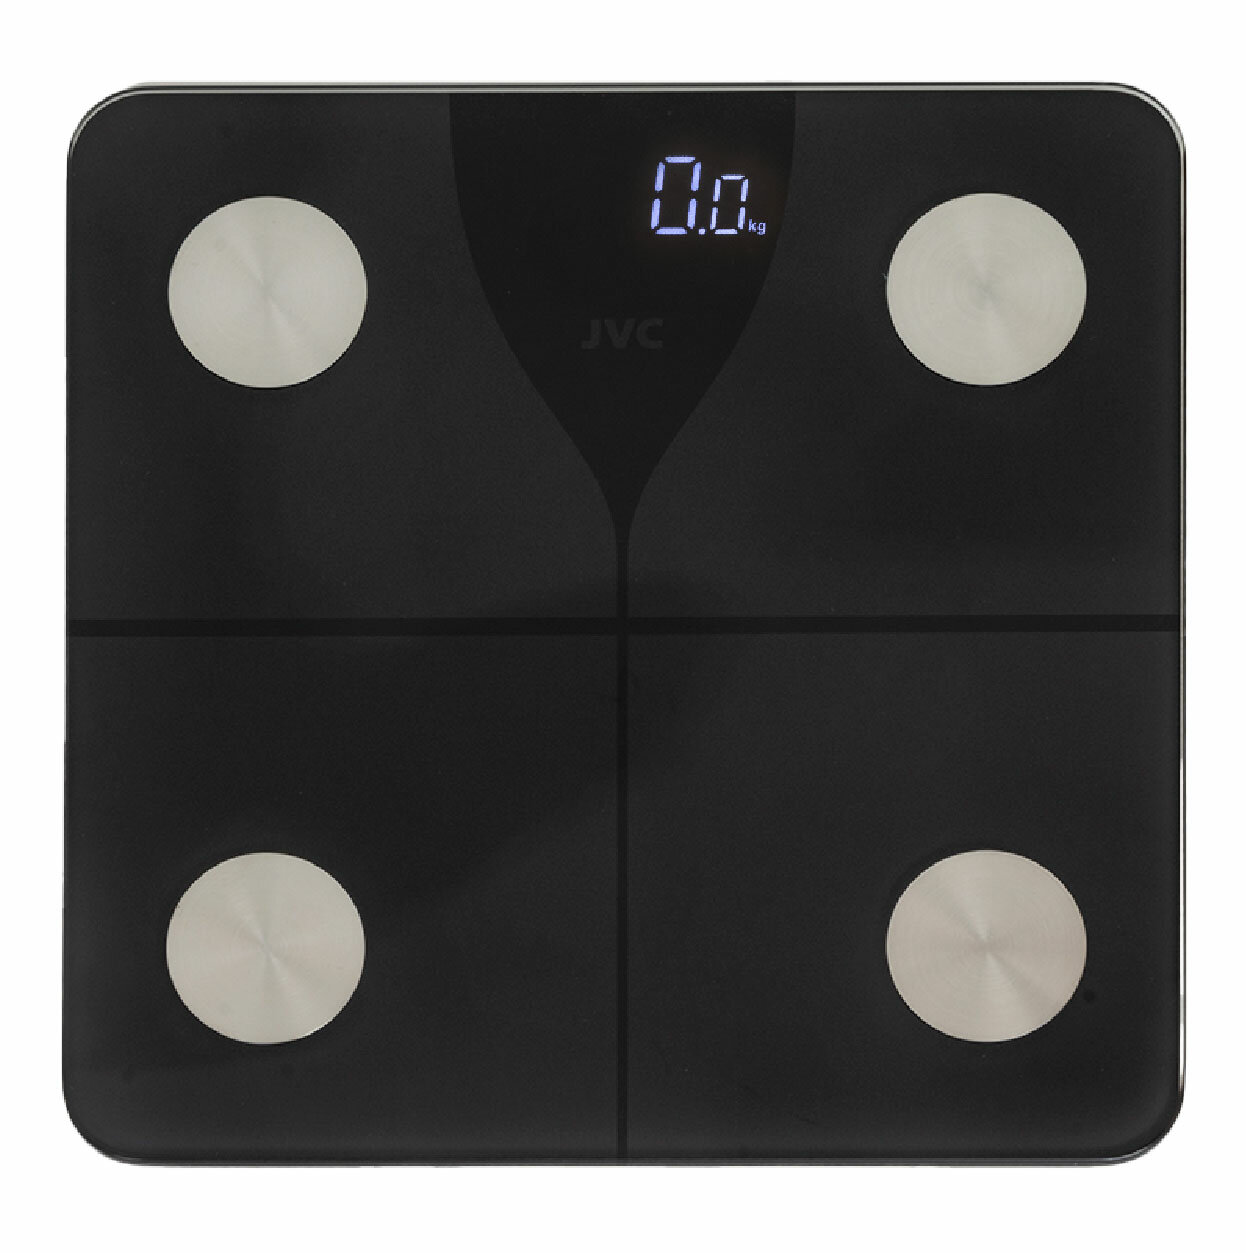 SMART напольные весы JVC управление со смартфона, до 180 кг, функции BMI, AMR, BMR, измерение жира, жидкости, мышечной и костной ткани - фотография № 1